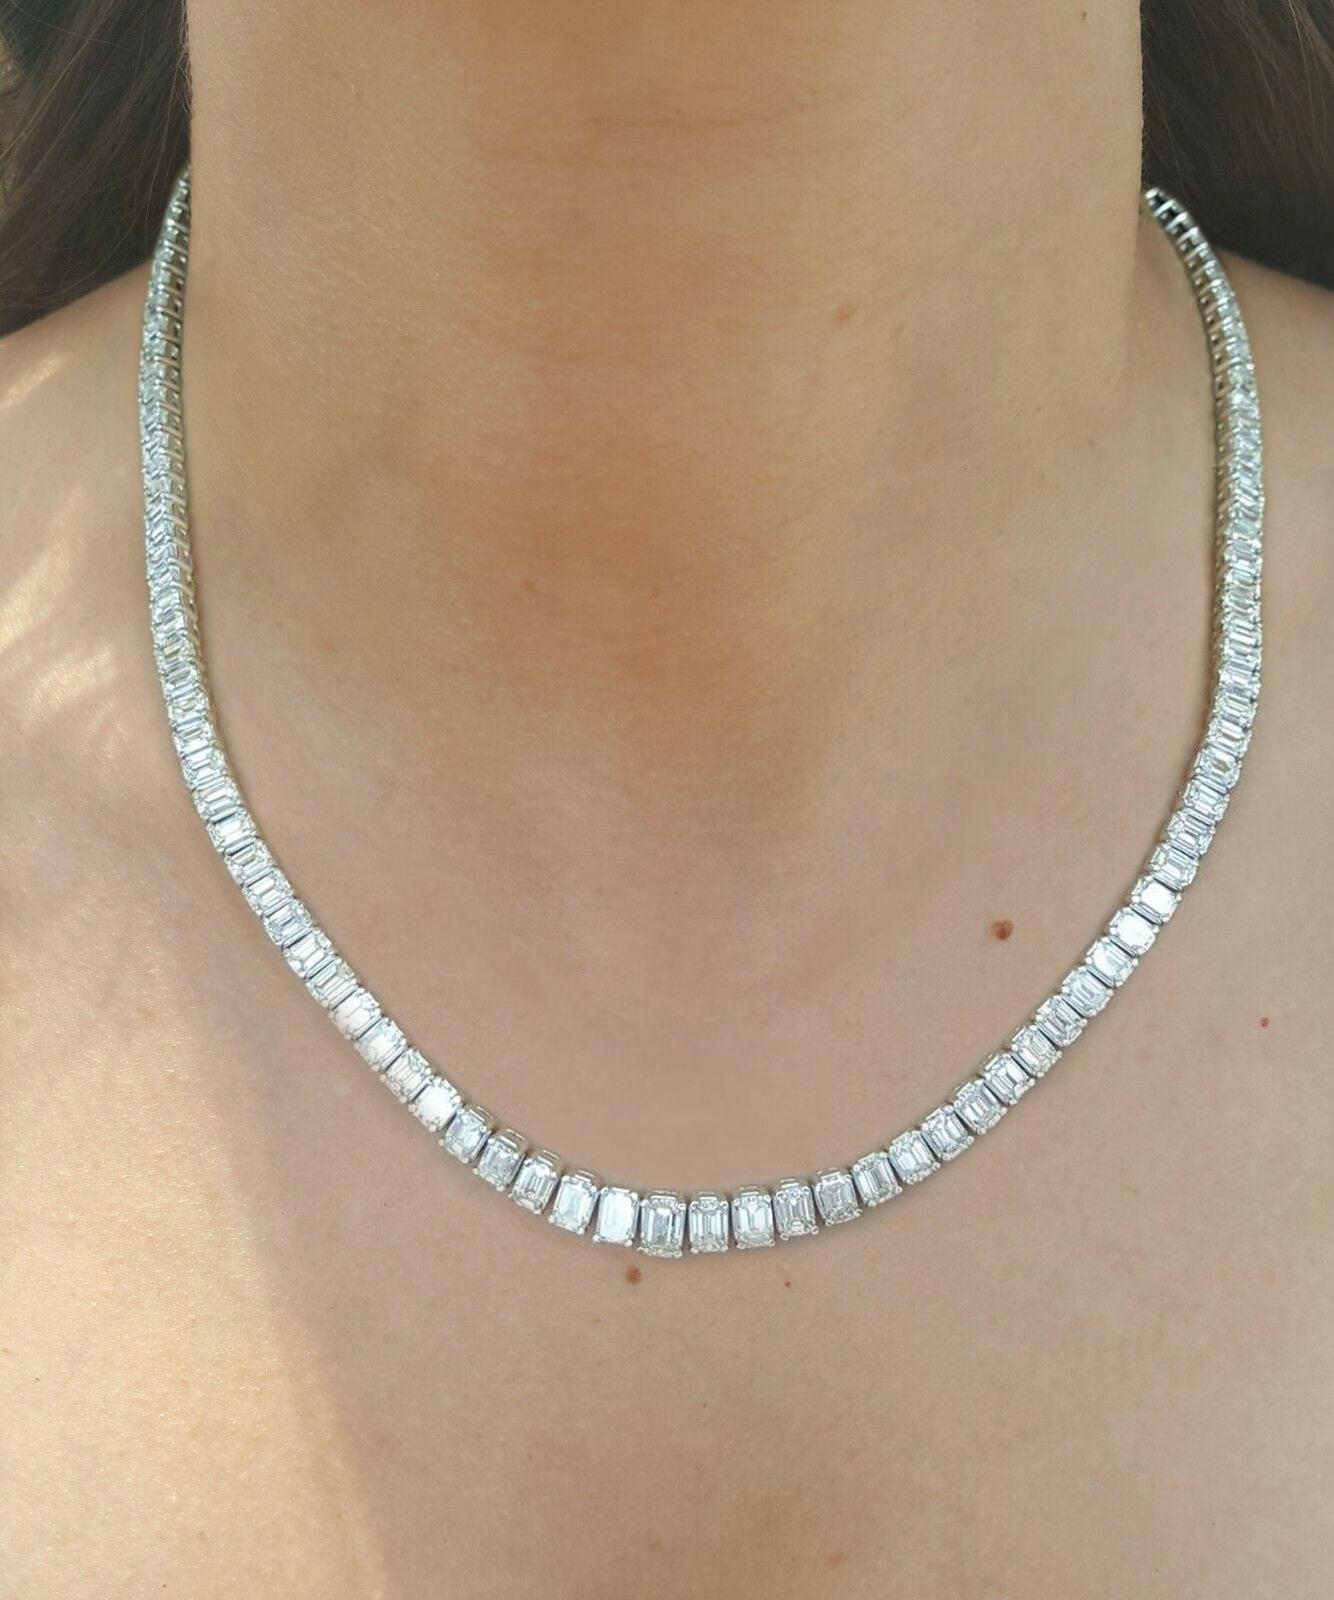 24 carat diamond necklace